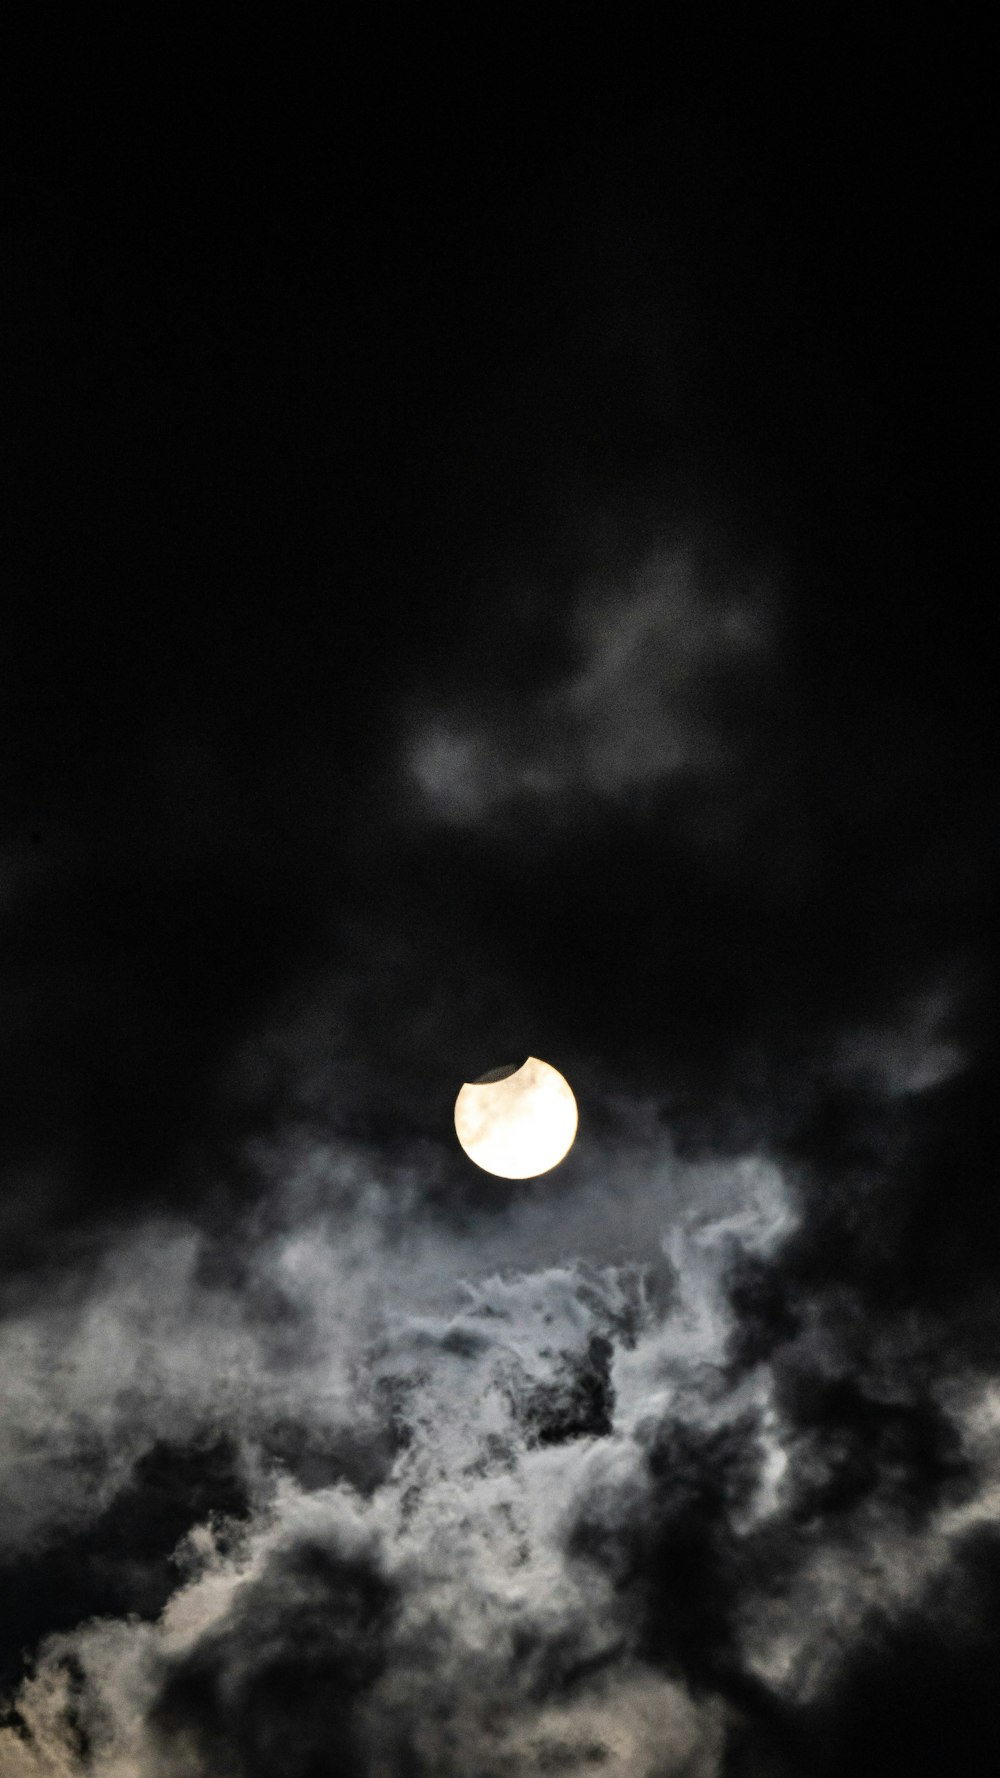 La luna se ve a través de las nubes oscuras